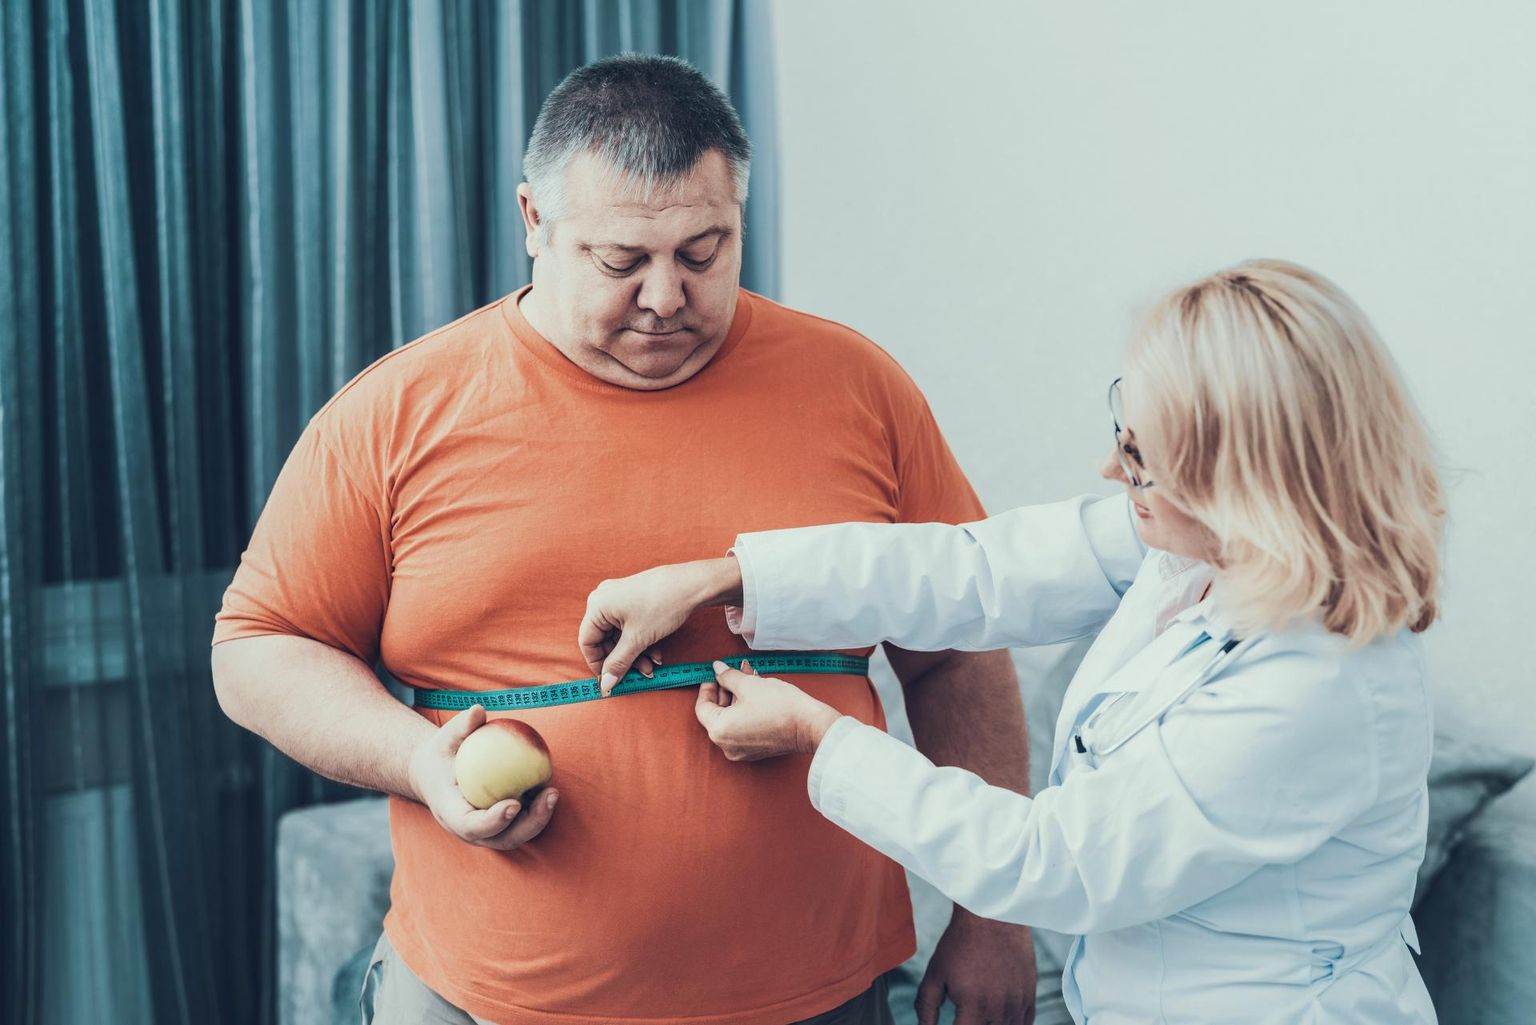 Rasvunud inimesel on doktor Ingrid Reppo sõnul kümme korda suurem risk haigestuda
2. tüüpi dia­beeti. Ülekaaluliseks loetakse, kui kehamassiindeks on 25 või üle selle. Kehamassiindeksi leidmiseks jagatakse kehakaal pikkuse ruuduga meetrites. Pilt on illustratiivne.